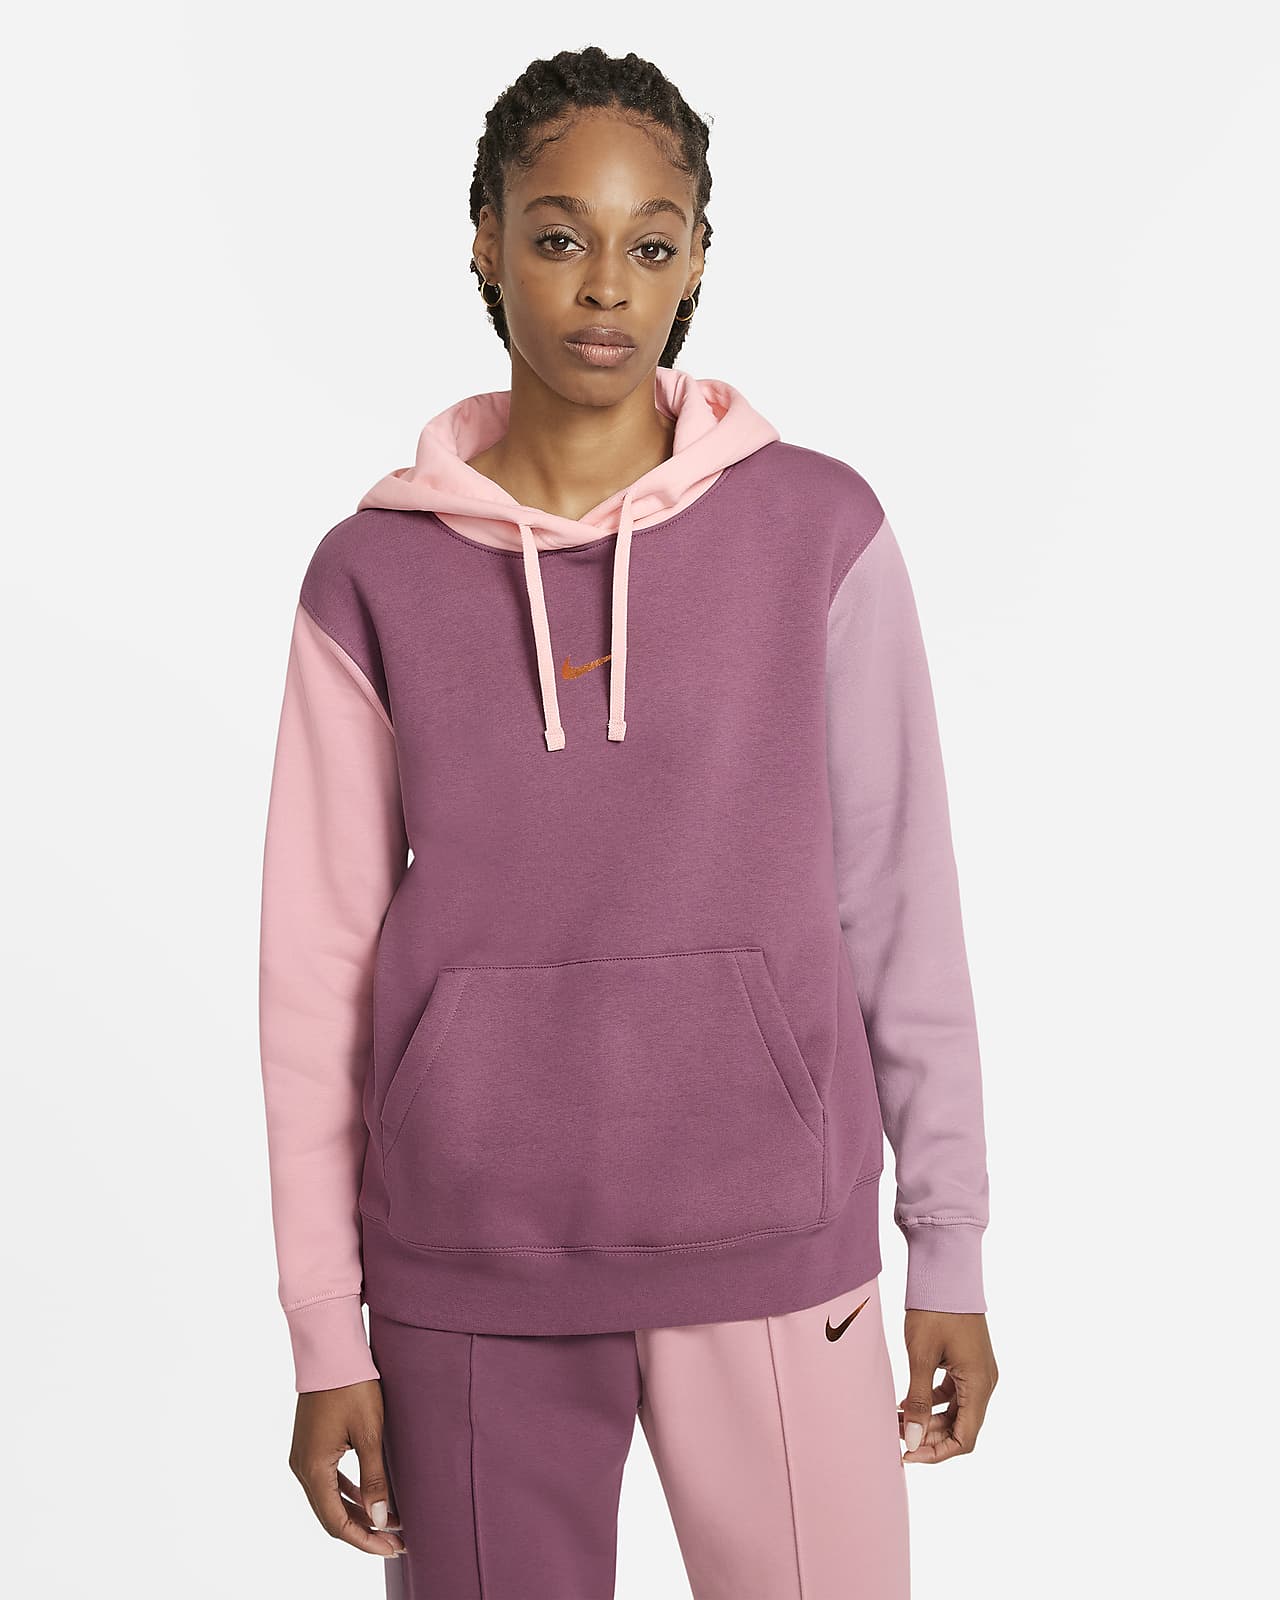 Nike Sportswear Women's Pullover Hoodie